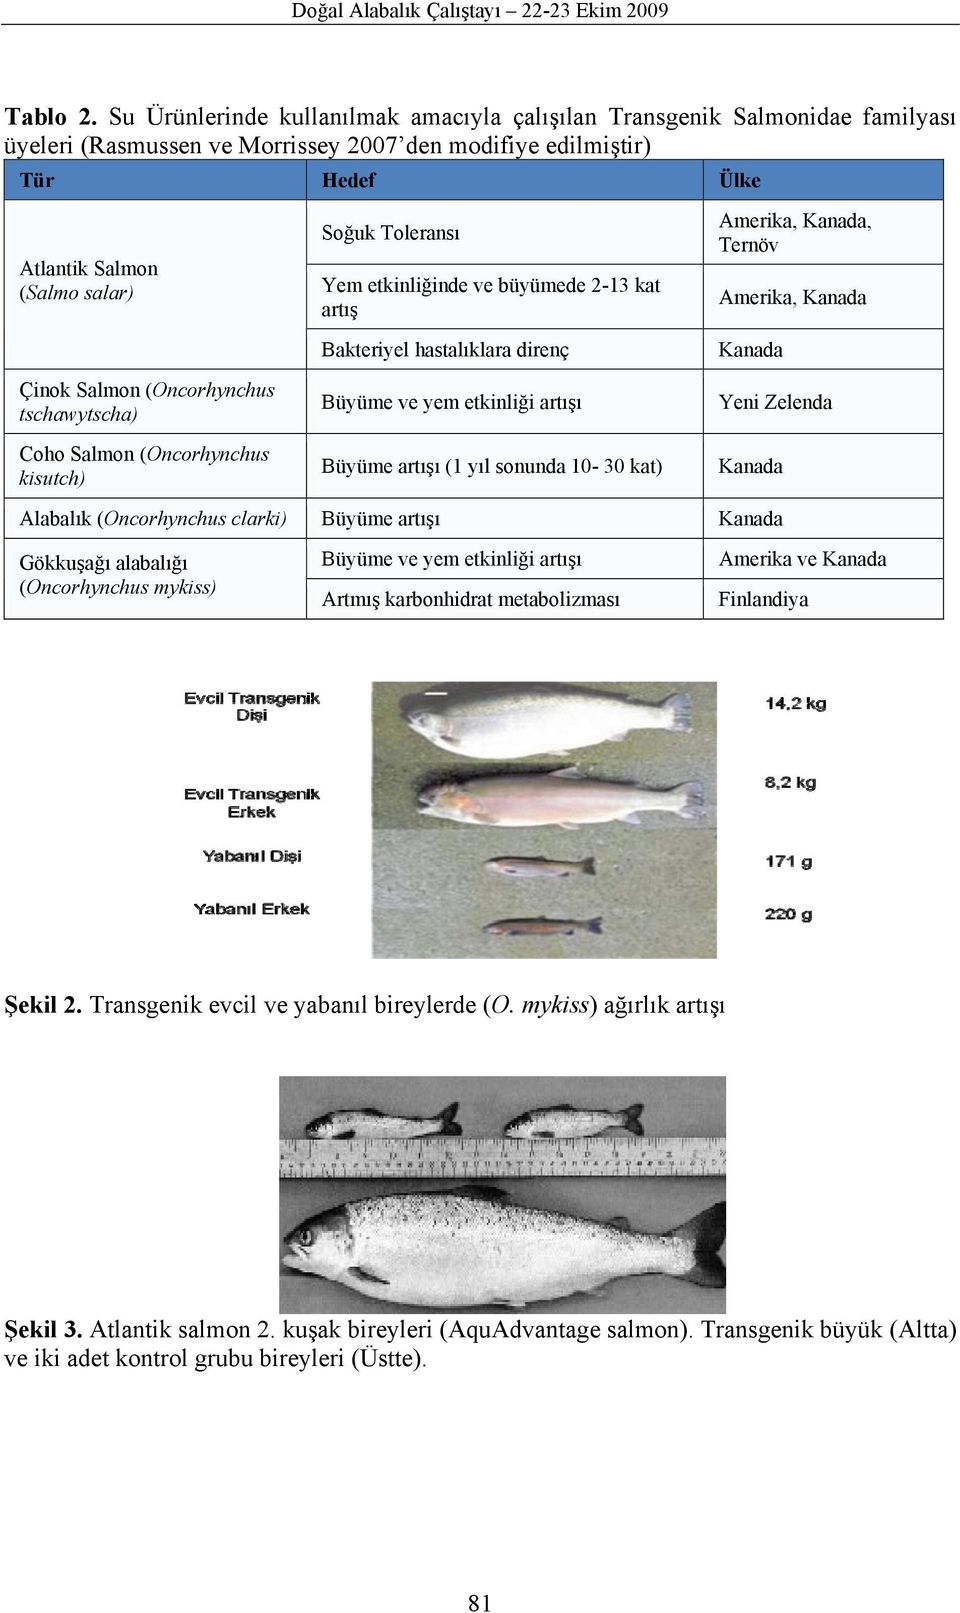 (Oncorhynchus tschawytscha) Coho Salmon (Oncorhynchus kisutch) Soğuk Toleransı Yem etkinliğinde ve büyümede 2-13 kat artış Bakteriyel hastalıklara direnç Büyüme ve yem etkinliği artışı Büyüme artışı